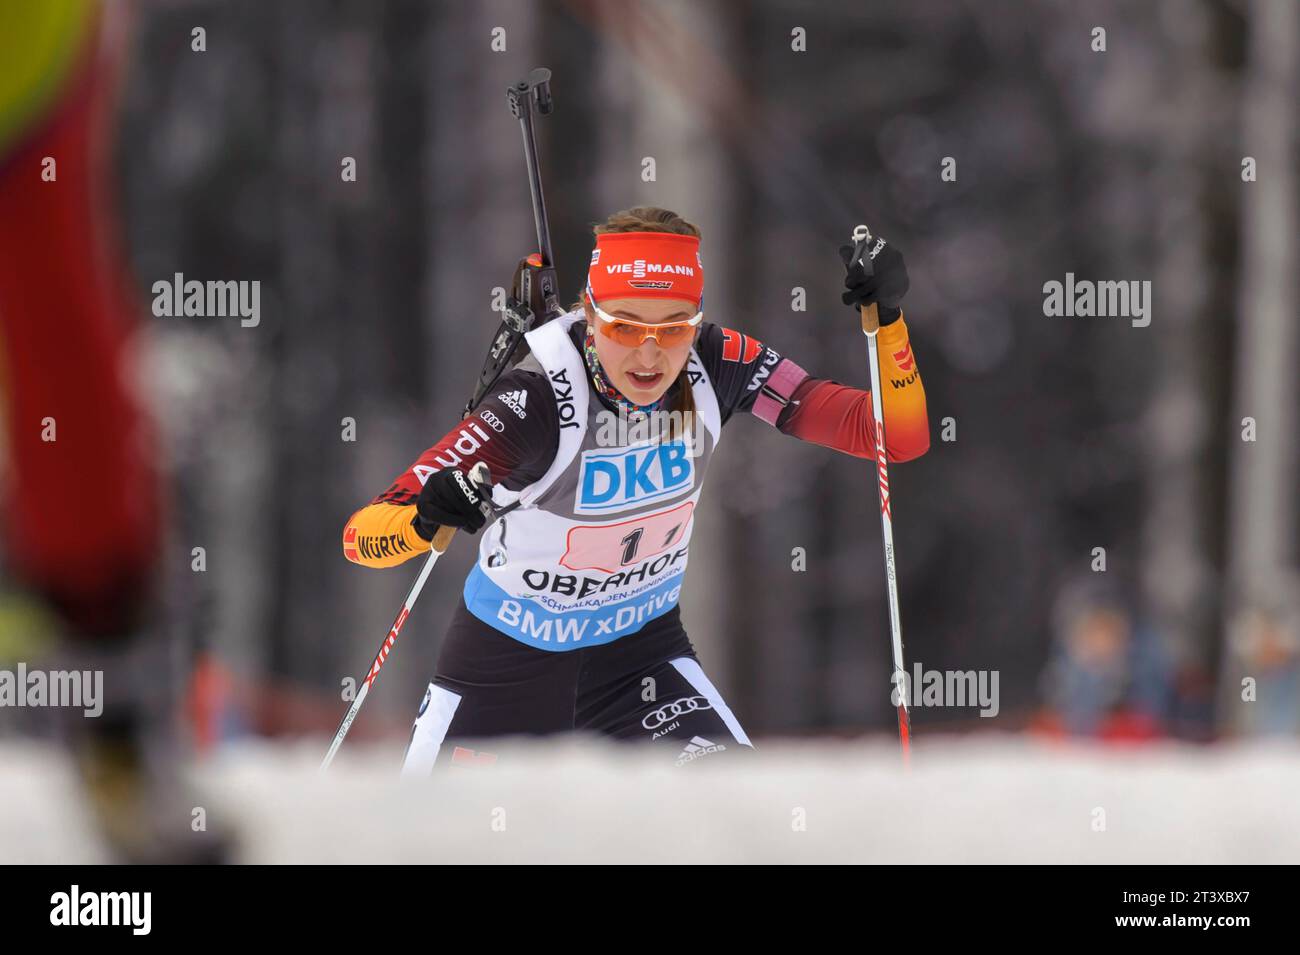 Luise Kummer Aktion Biathlon Welt Cup 4 x 6 KM Staffel der Frauen in Oberhof, Deutschland am 07.01.2015 Stock Photo